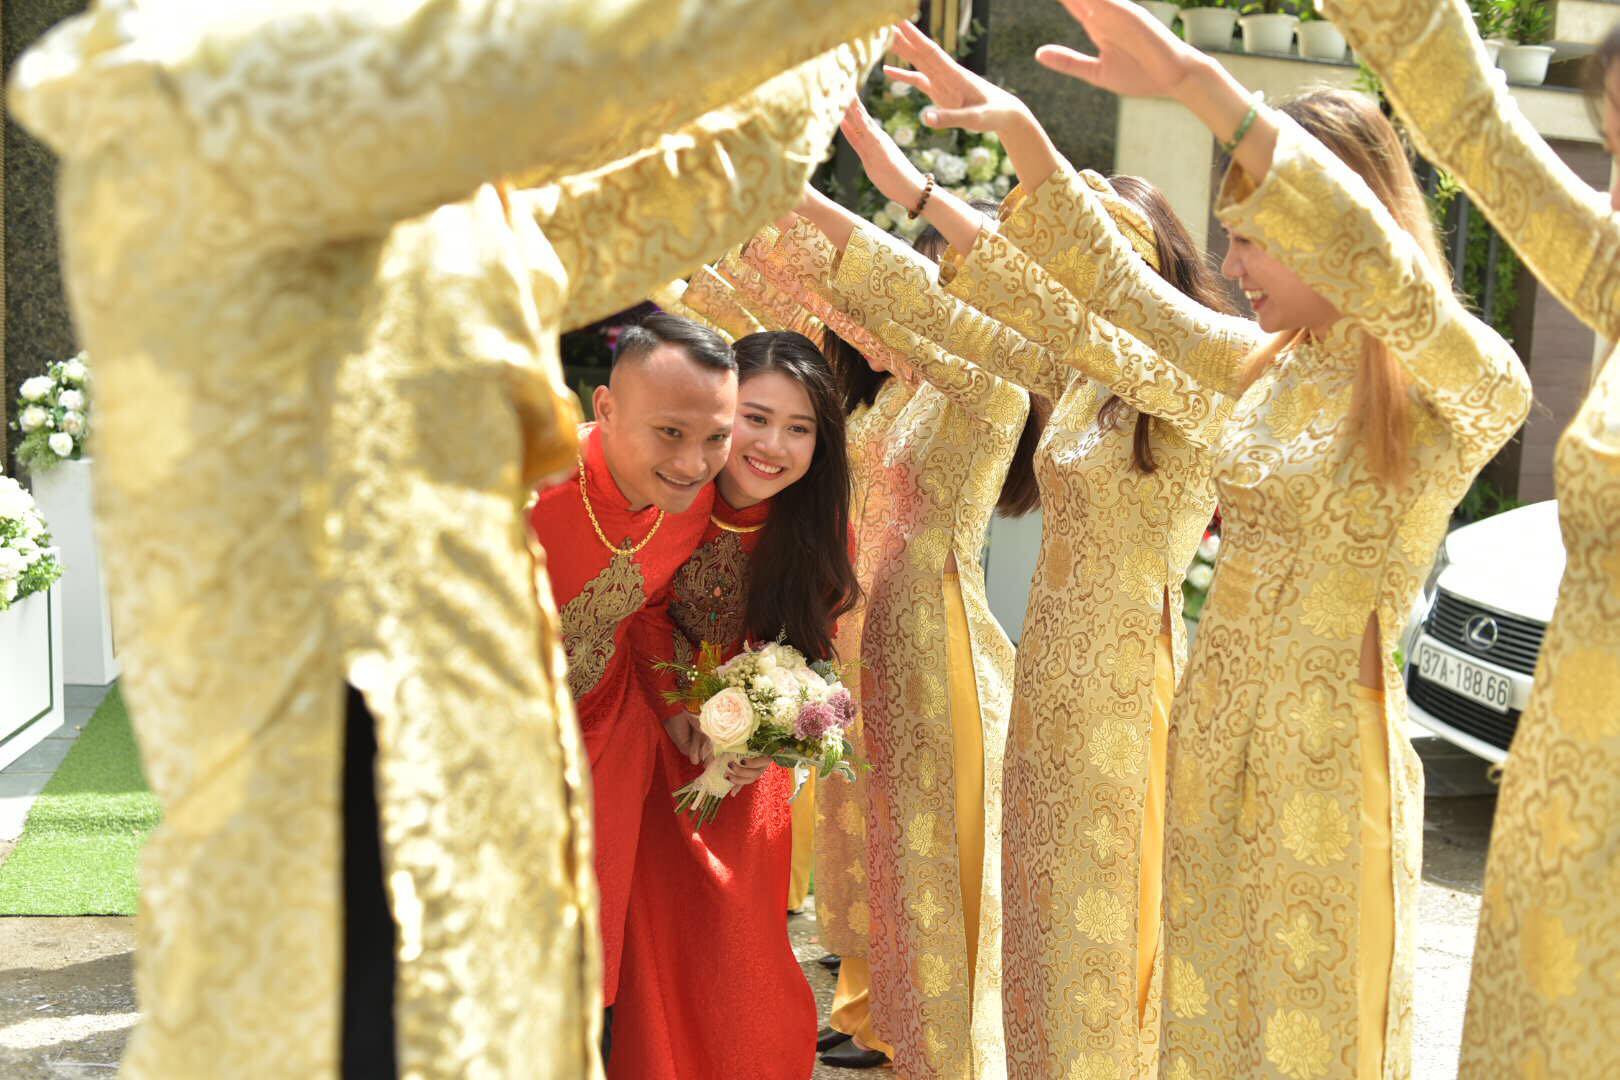 Sau nhiều năm hẹn hò, tuyển thủ Trọng Hoàng và bạn gái Quỳnh Anh mới đi đến quyết định về sống chung một nhà. Lễ cưới của hai người sẽ được tổ chức long trọng tại TP Vinh vào ngày 25/10 tới đây. Ảnh: CTV